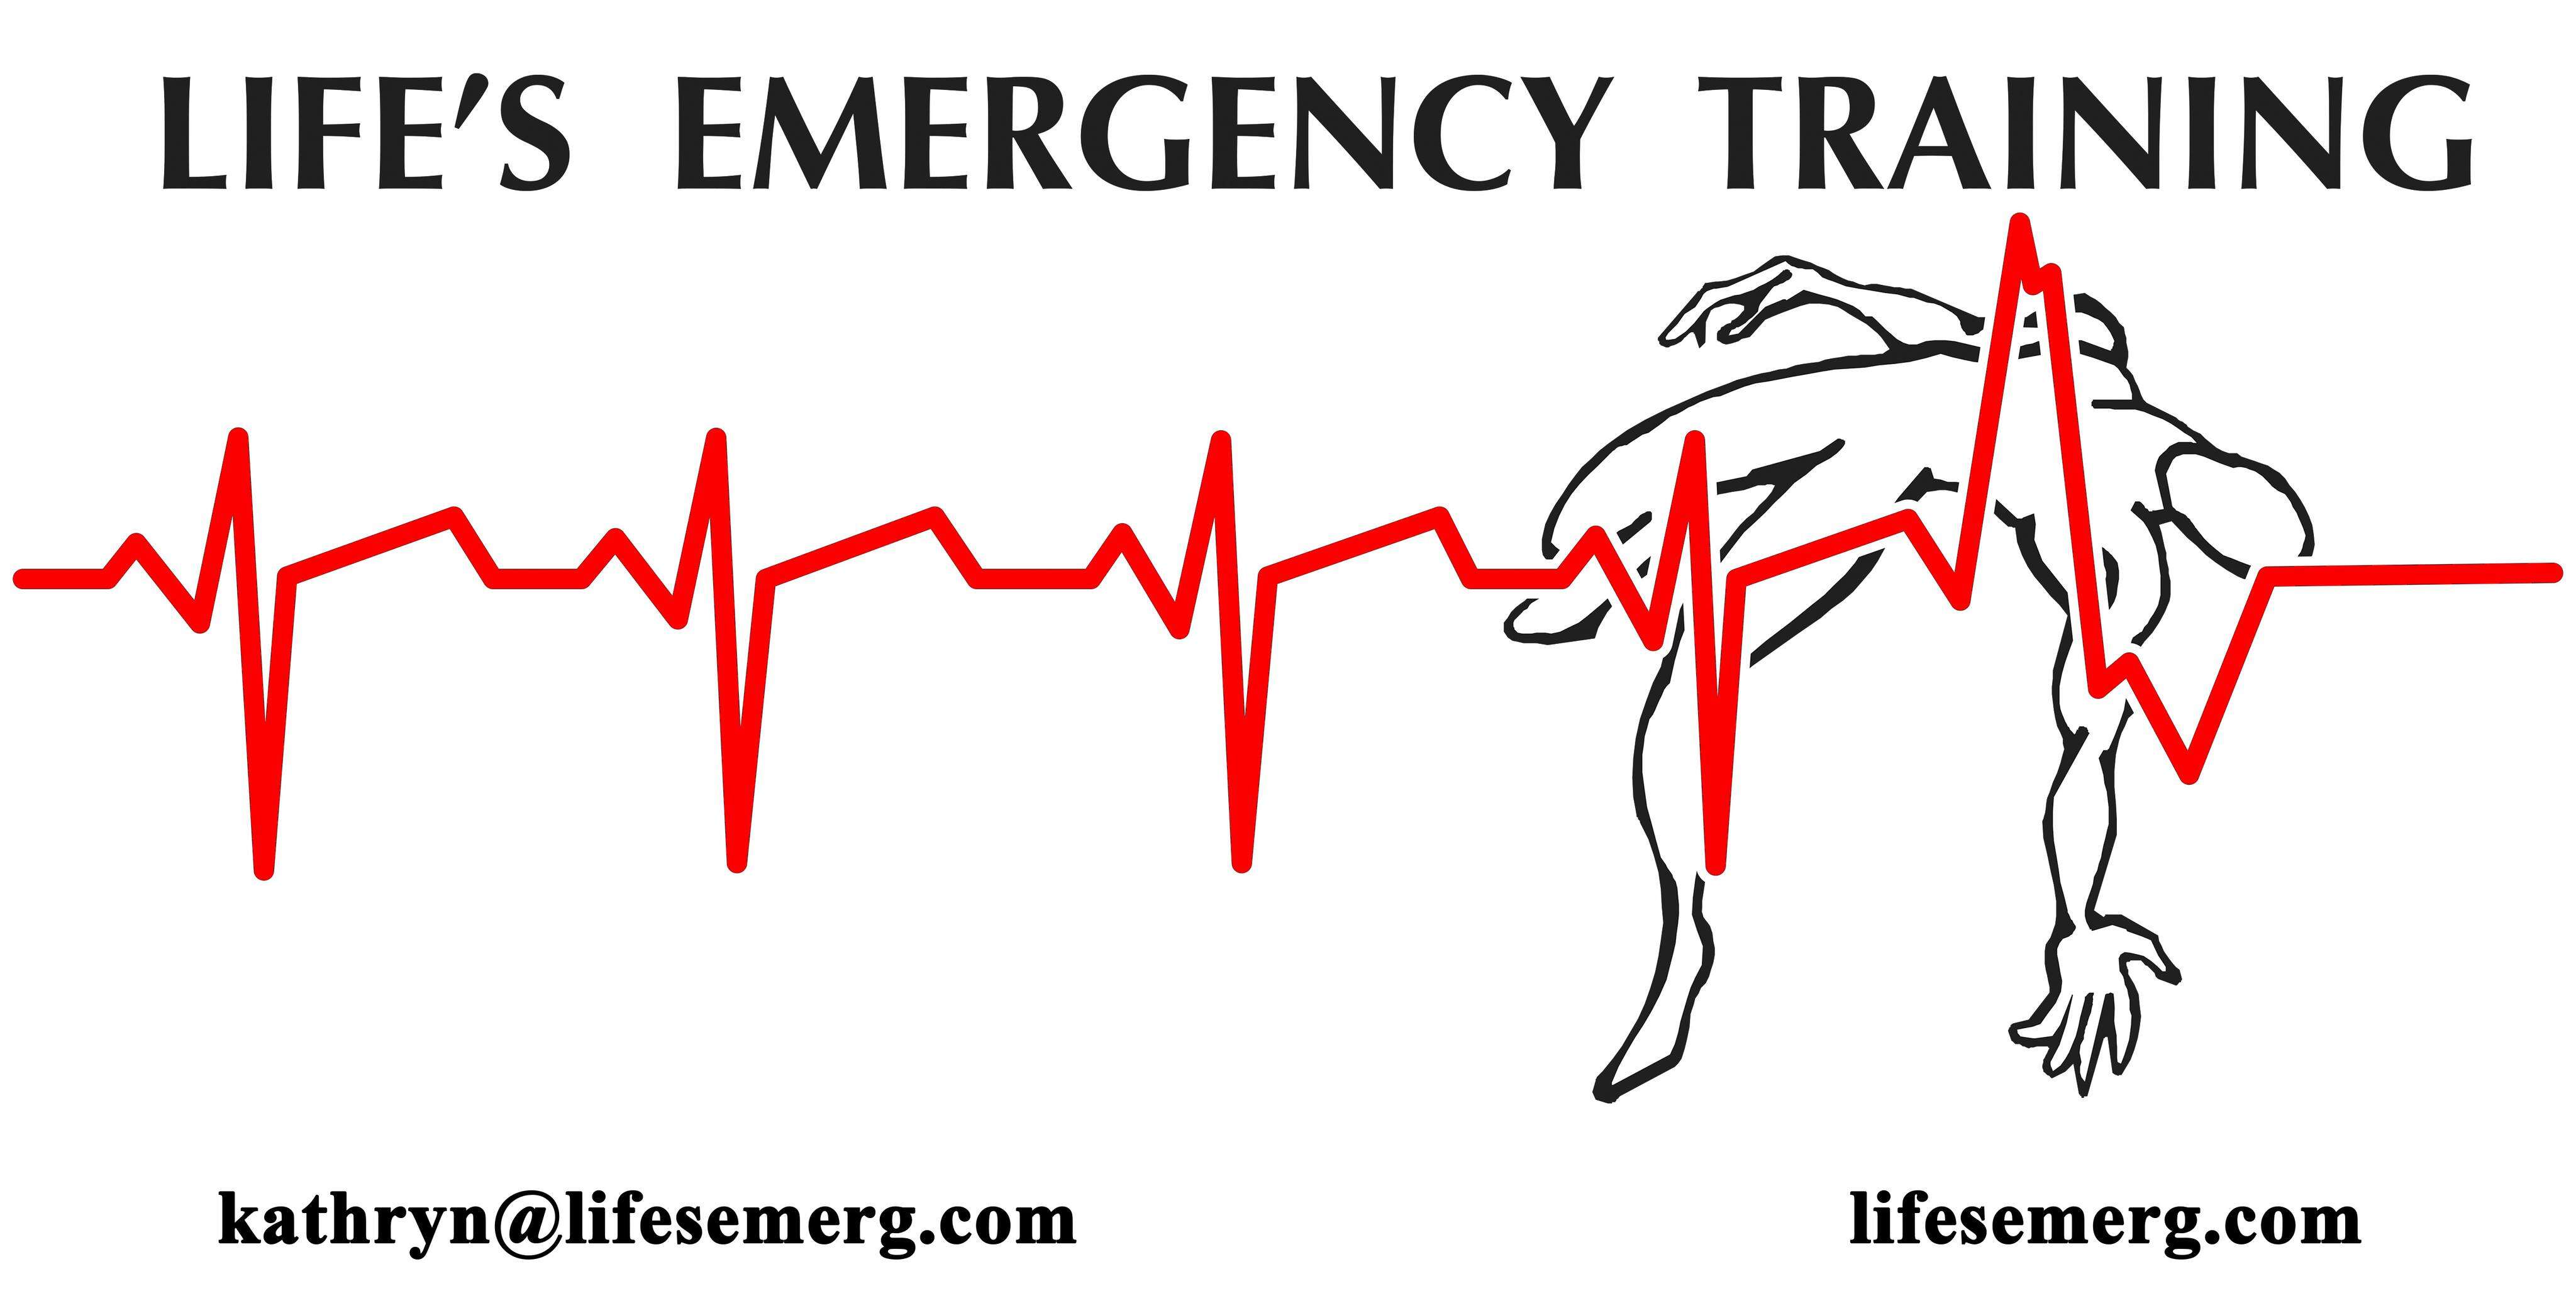 Life's Emergency Training